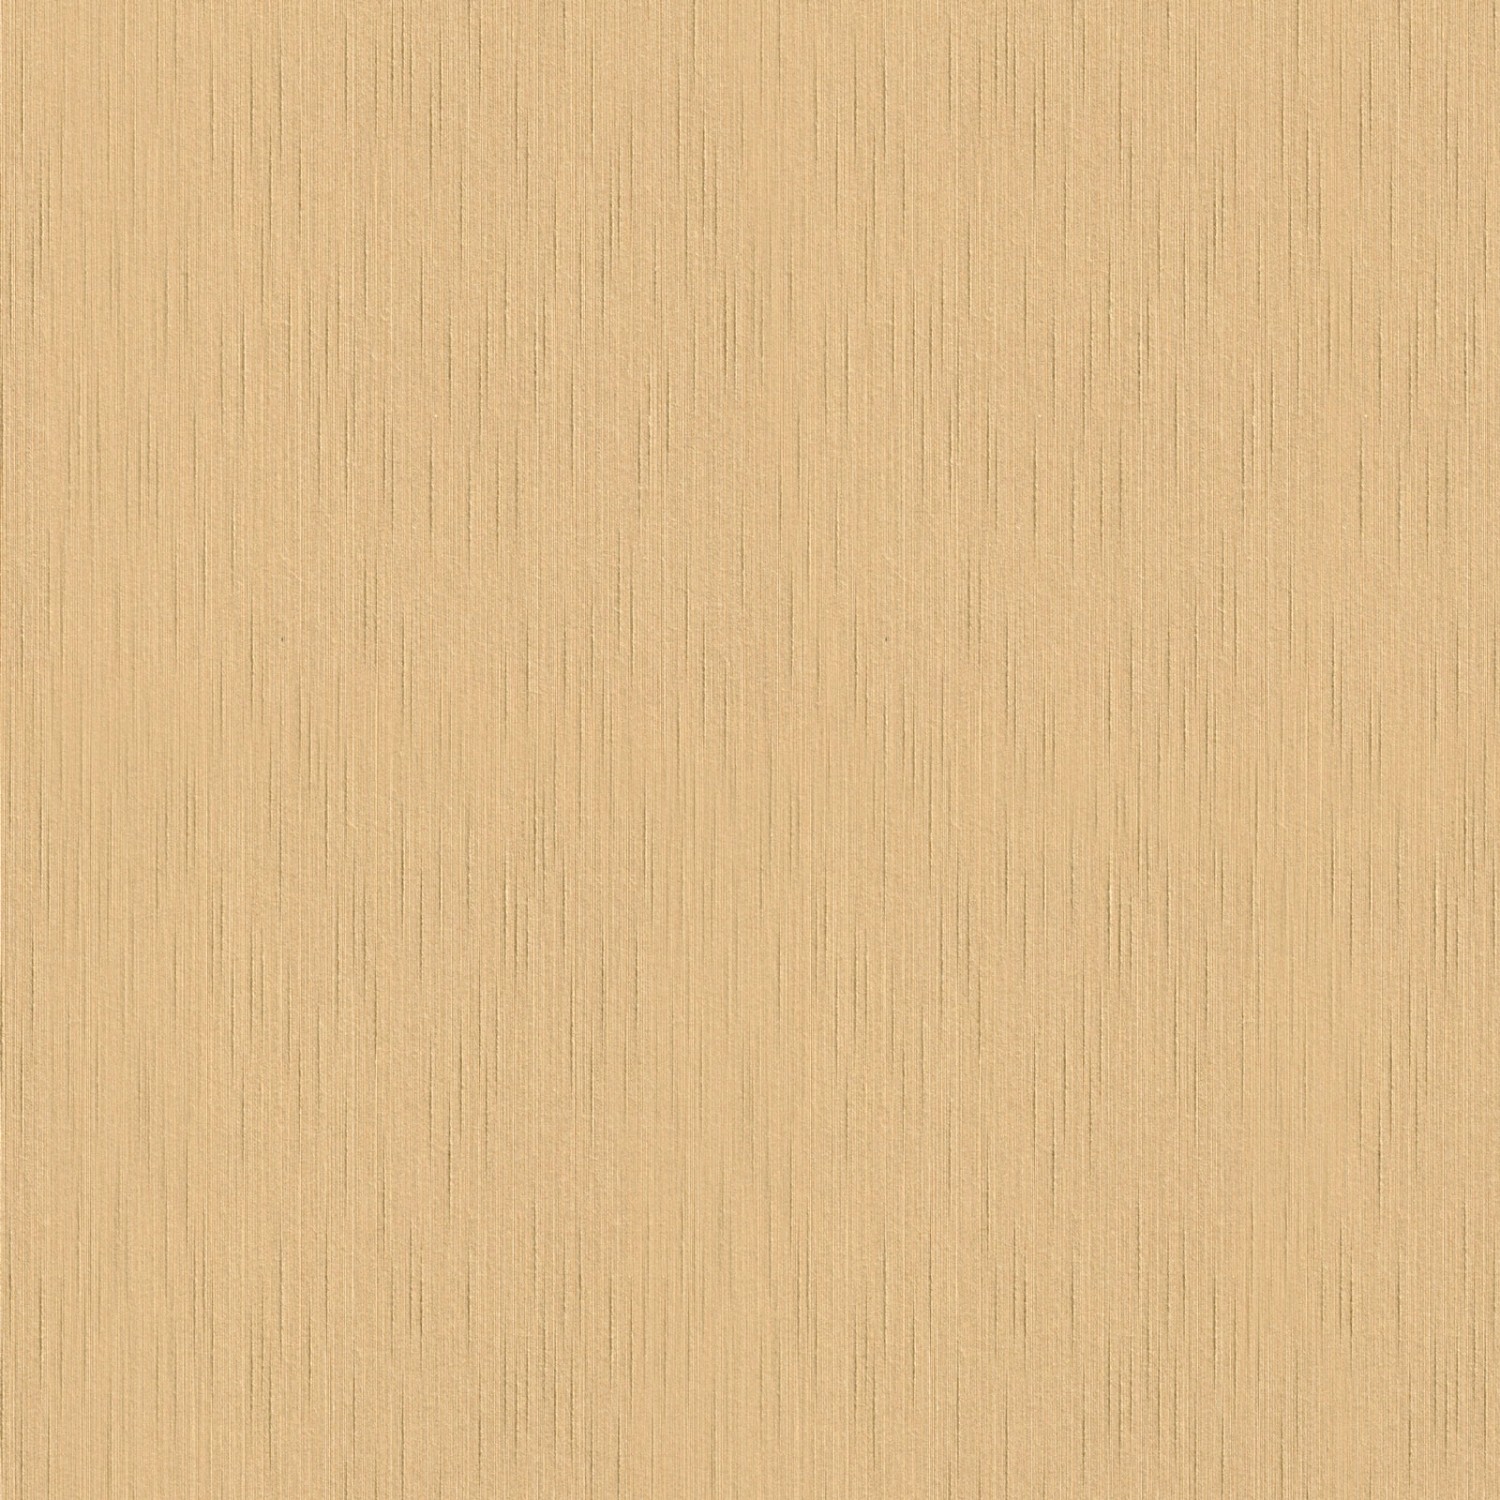 Bricoflor Uni Tapete in Braun Gold Elegante Vliestapete mit Textil Struktur für Wohnzimmer und Flur Einfarbige Vlies Tex